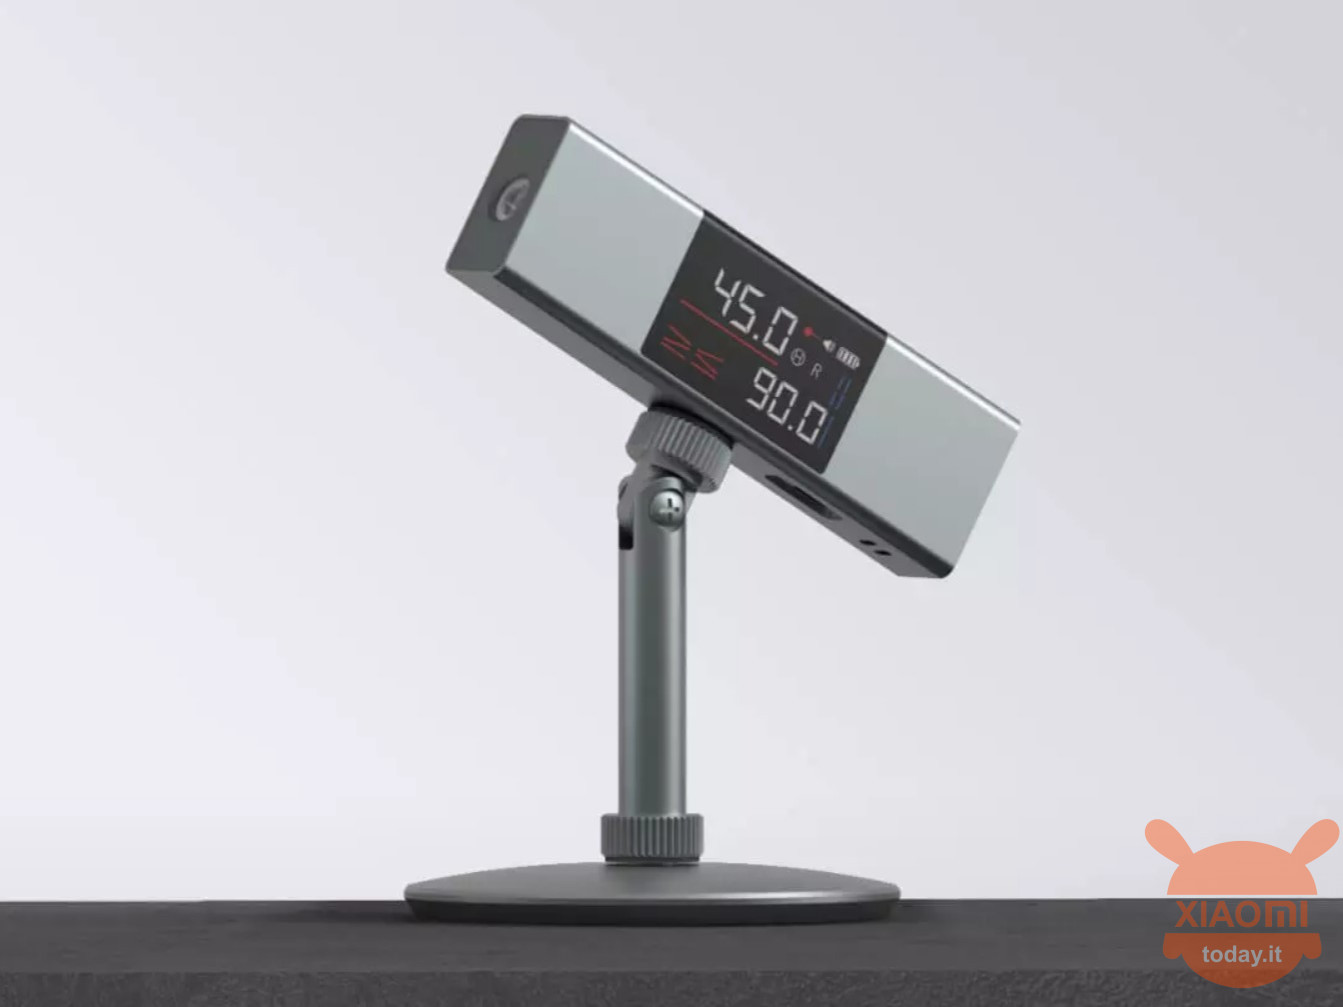 Duke LI 1 Laser Angle Meter con doppio display adesso in crowdfunding